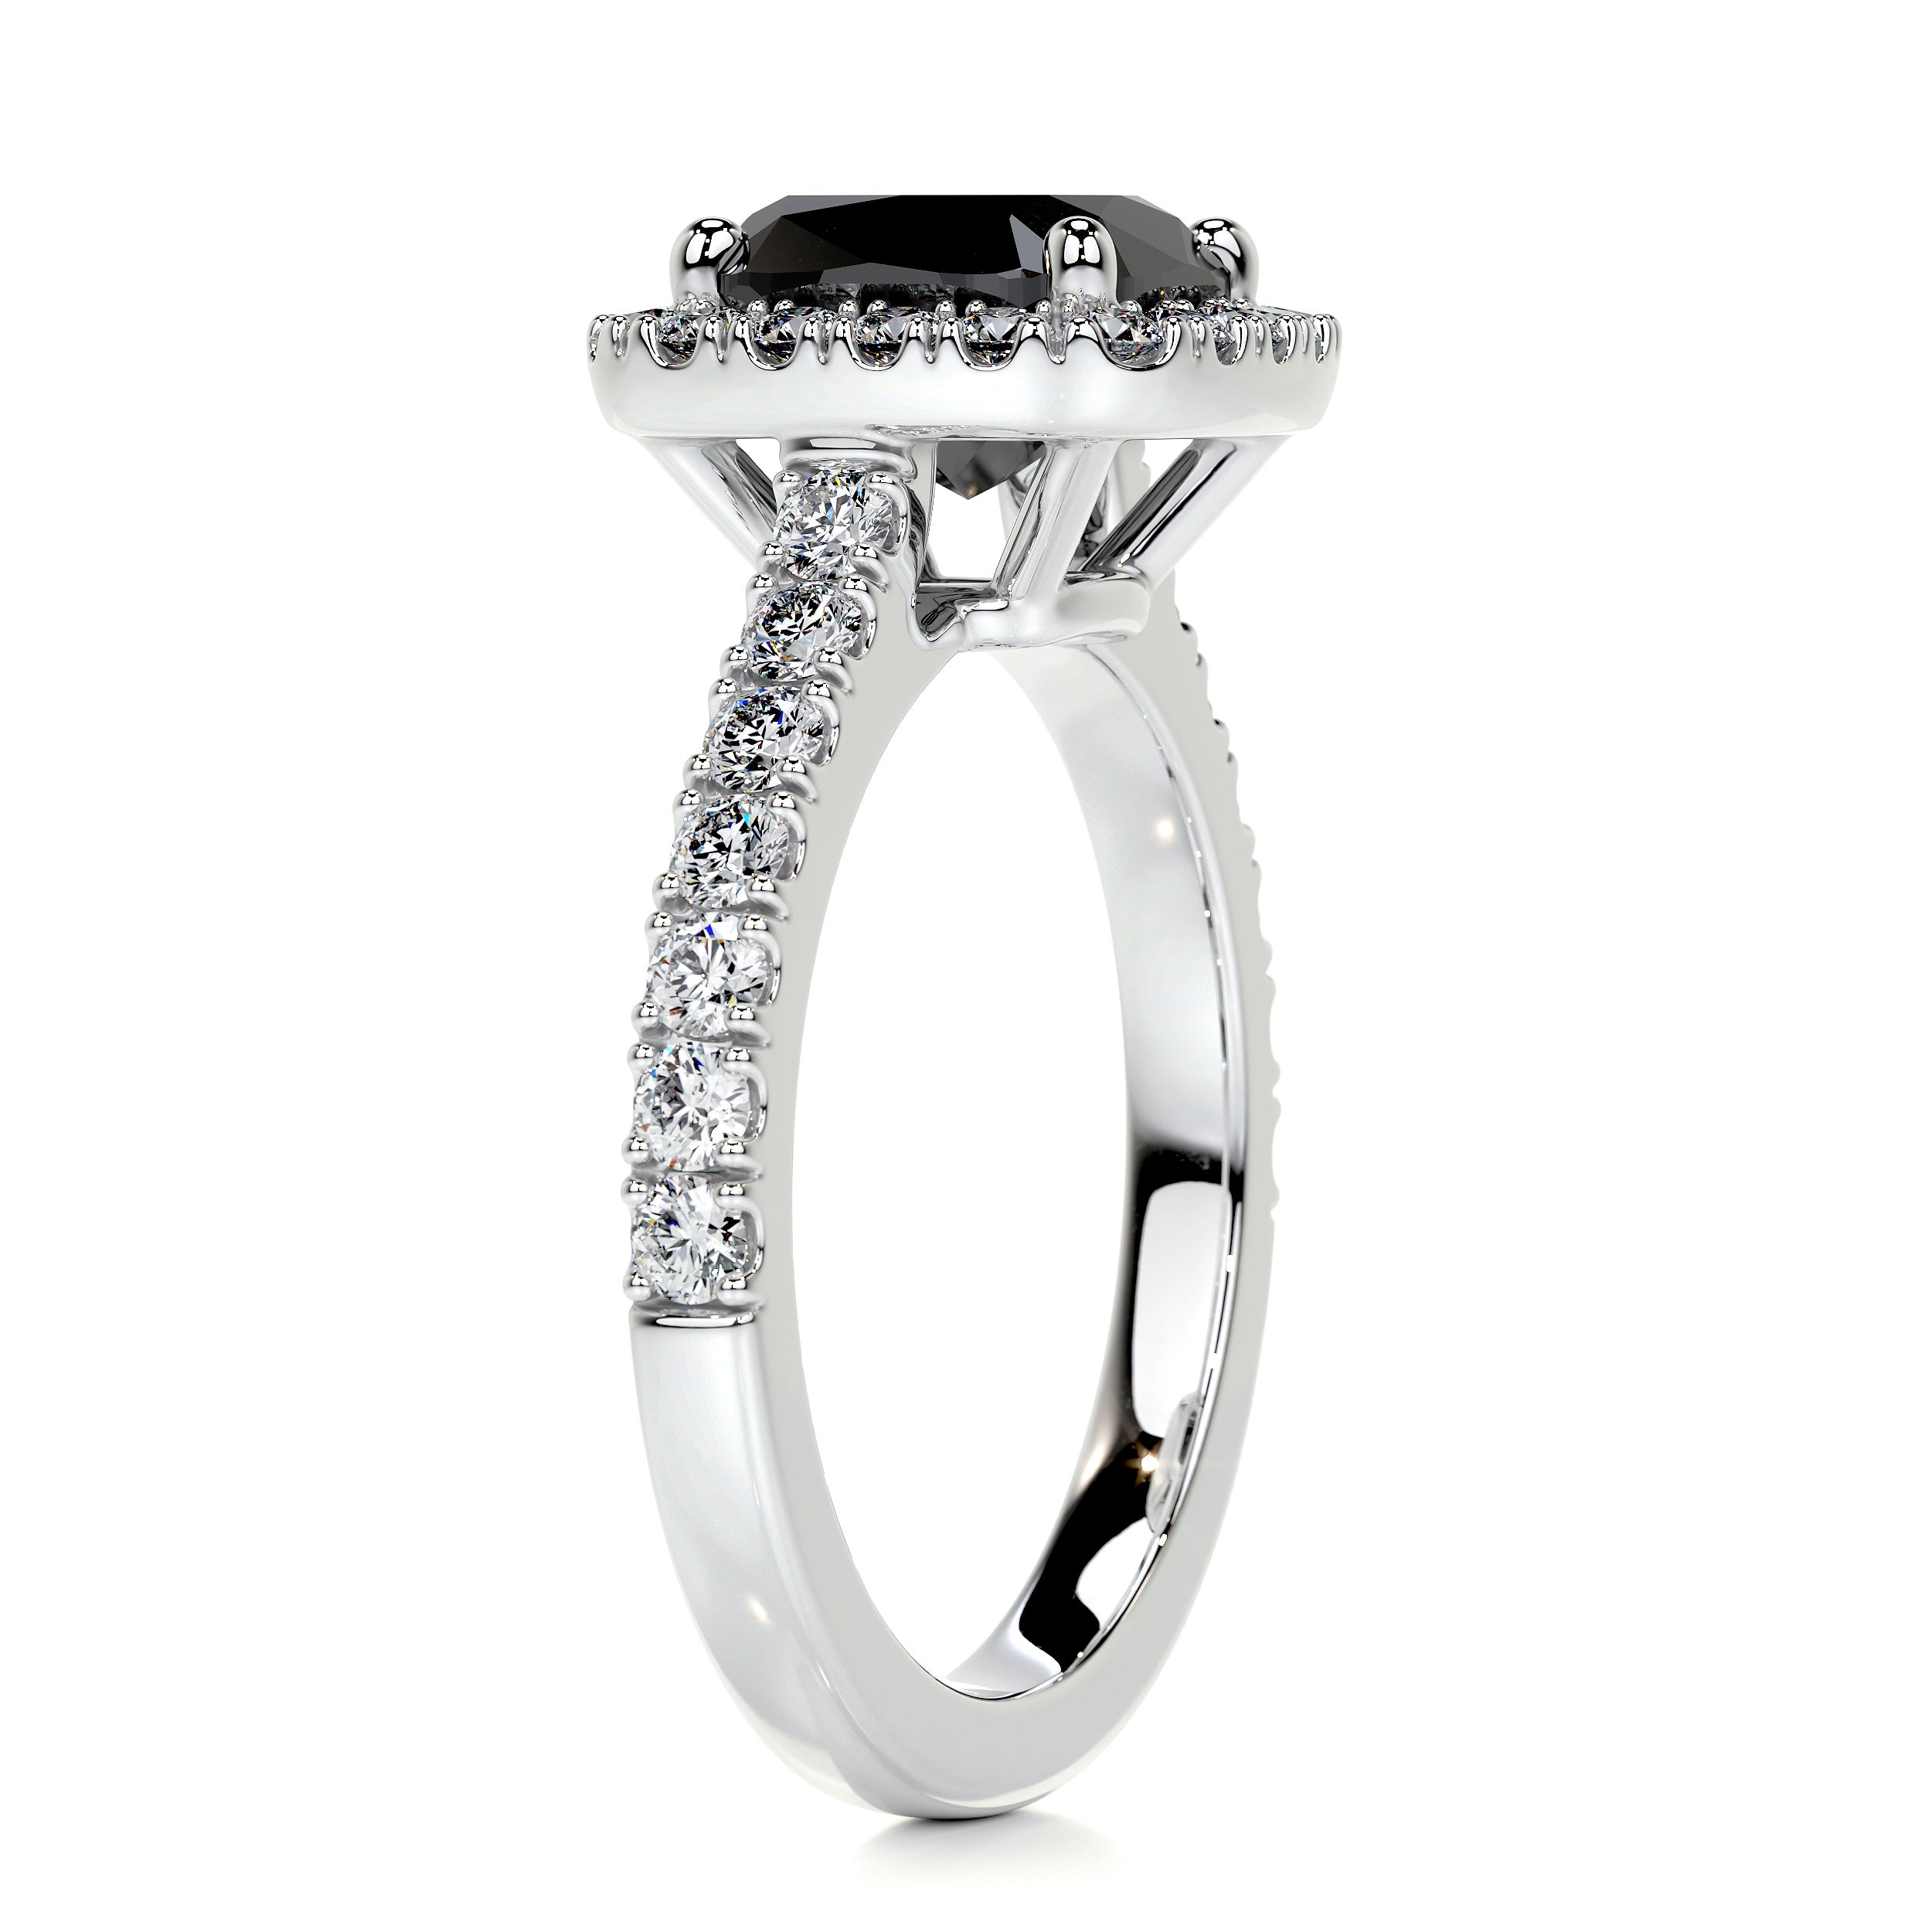 Celeste Diamond Engagement Ring -18K White Gold